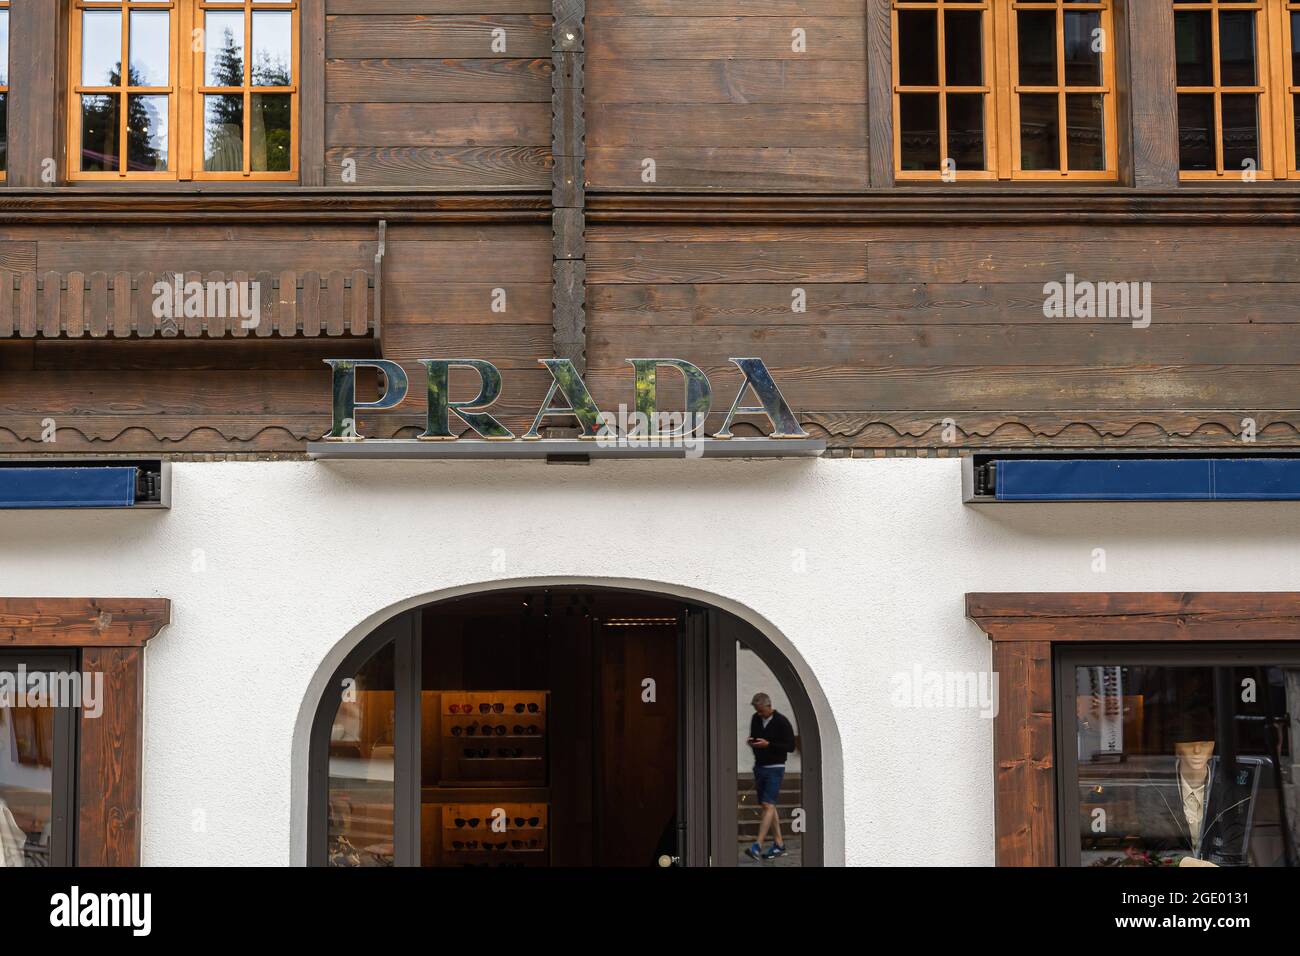 Gstaad, Schweiz - 16. Juli 2020: Ein Modegeschäft der Firma Prada in Gstaad  Stockfotografie - Alamy